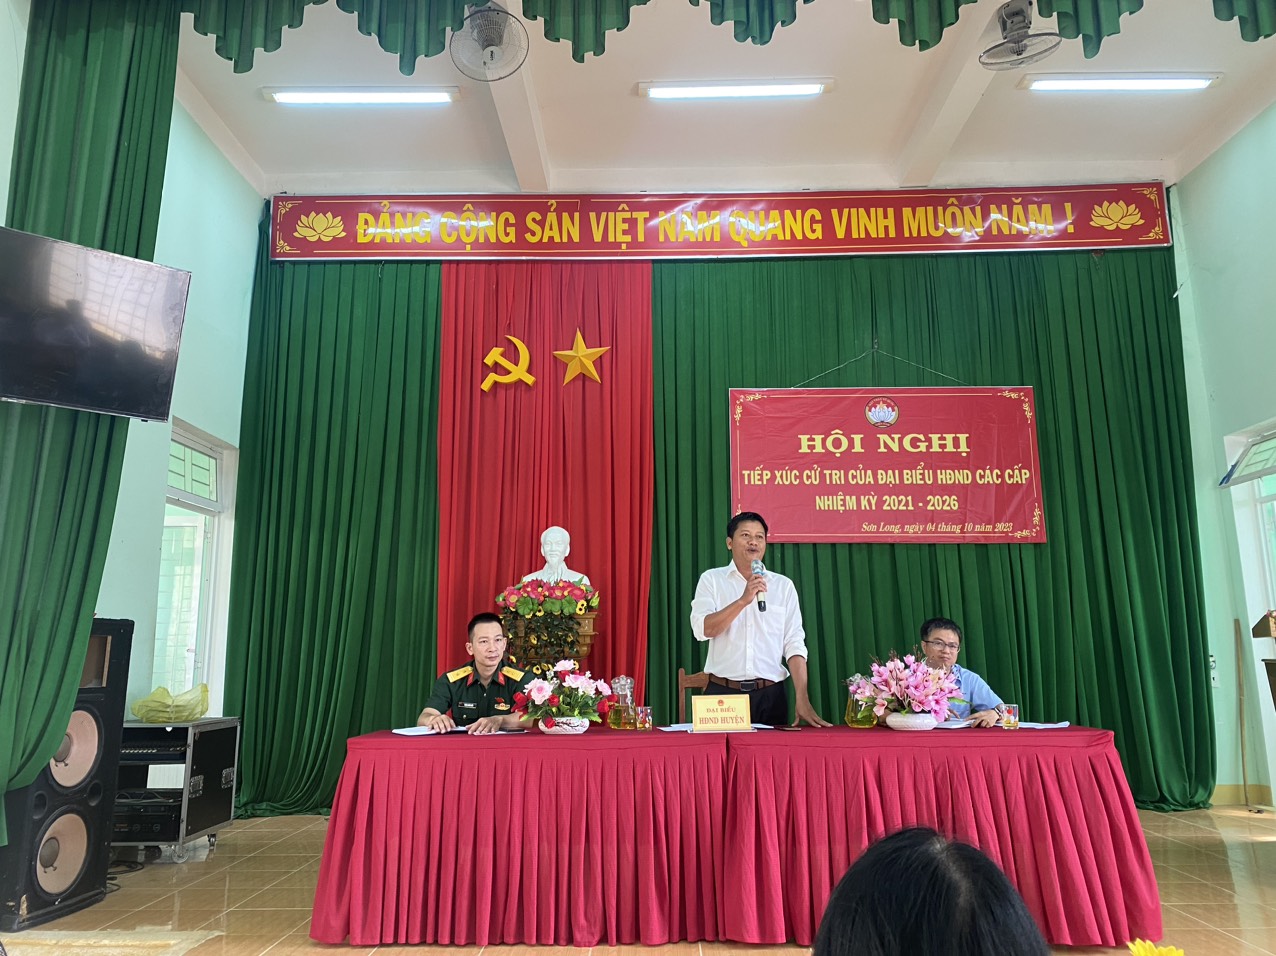 Sơn Long tổ chức hội nghị tiếp xúc cử tri cuối năm 2023 của HĐND các cấp nhiệm kỳ 2021 – 2026 vào ngày 04/10/2023 tại Nhà văn hóa xã Sơn Long